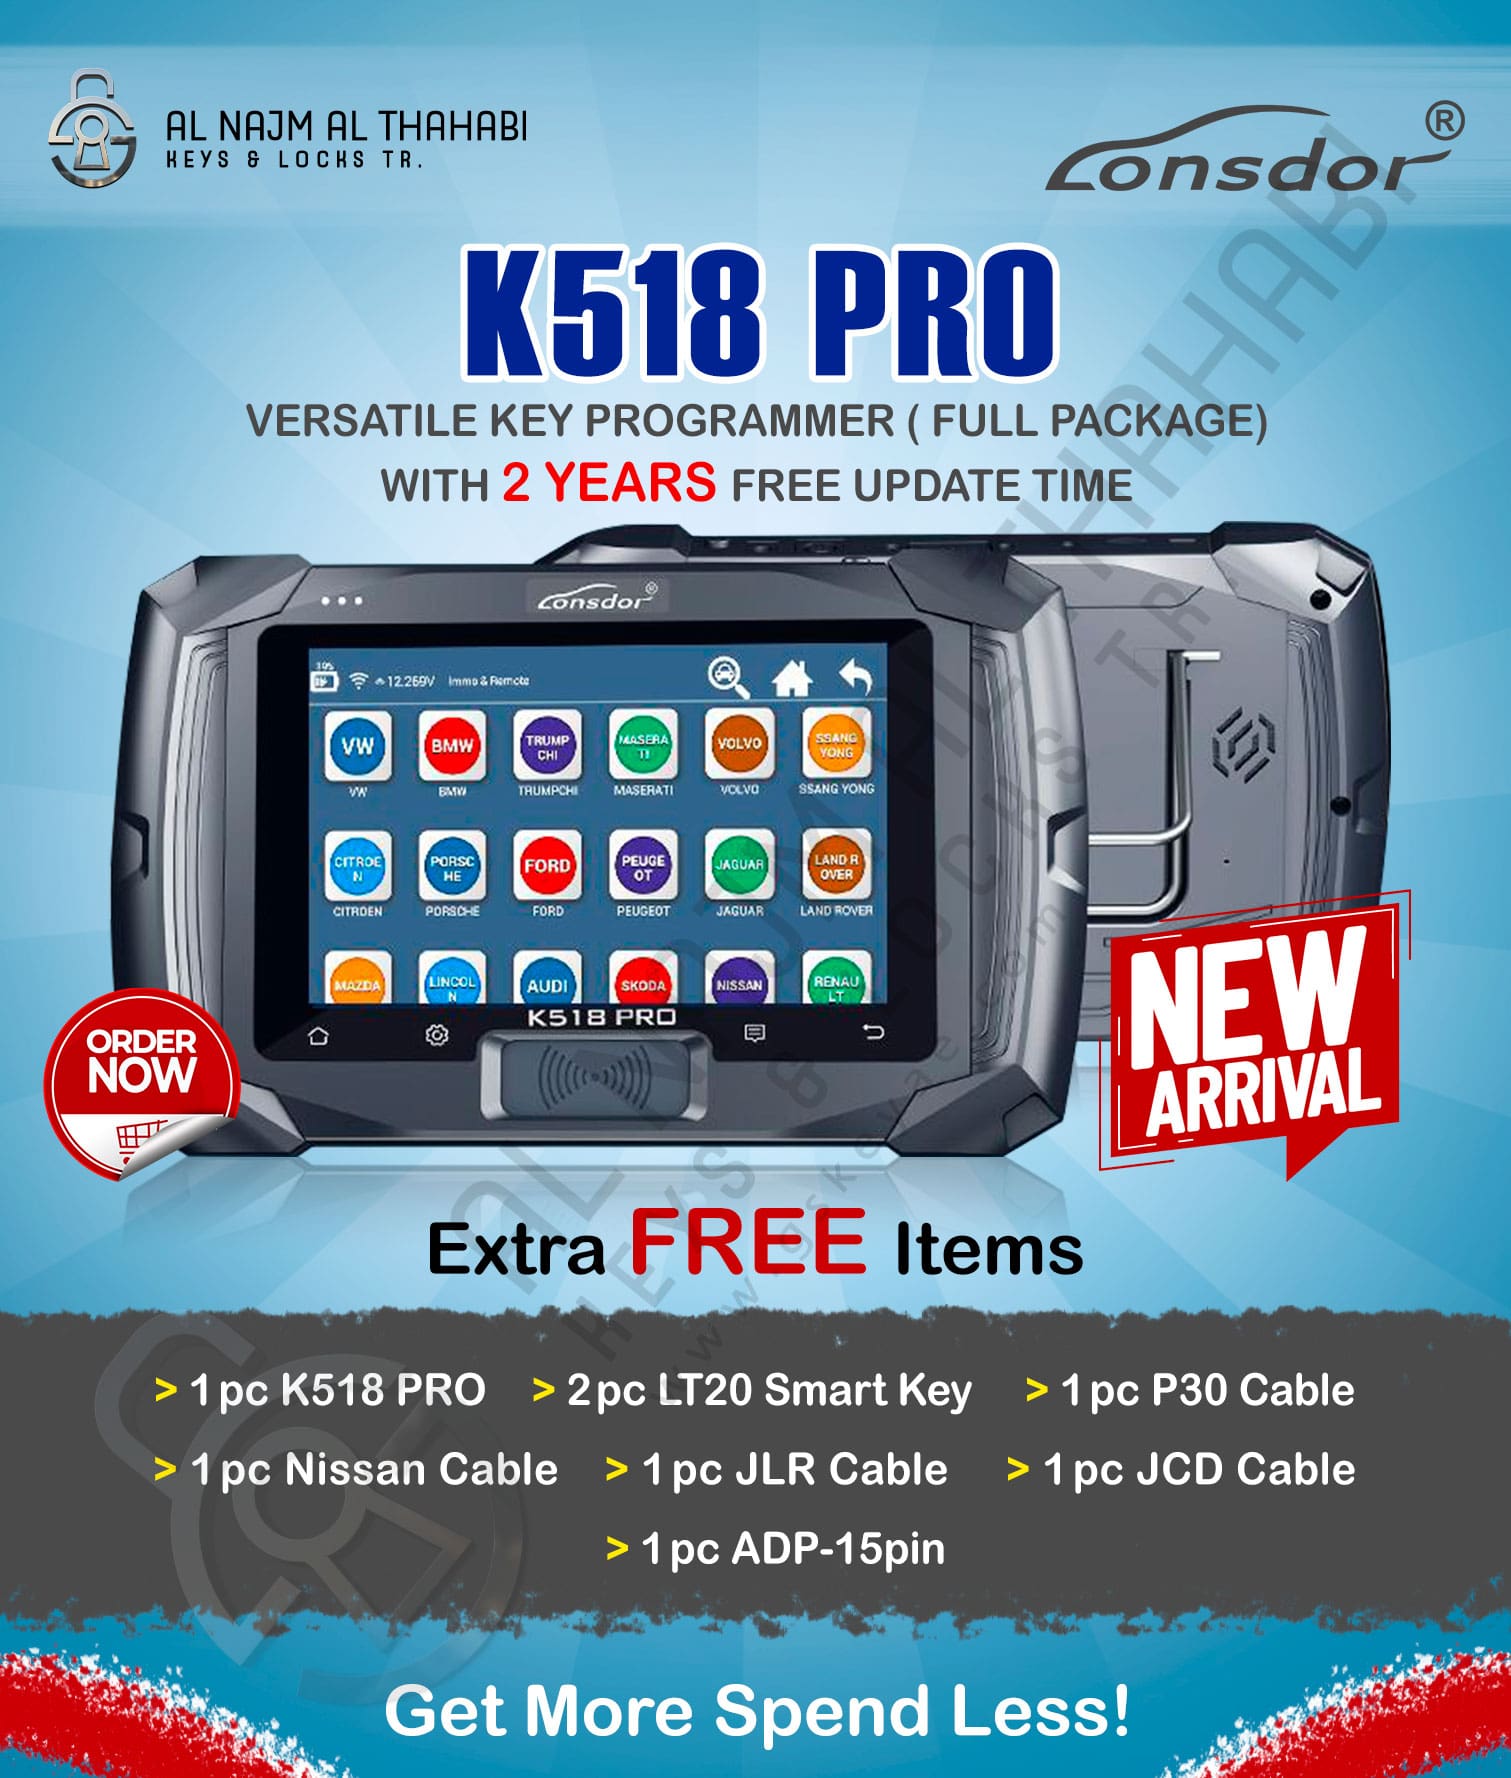 Lonsdor K518 PRO Key Programmer Full Package